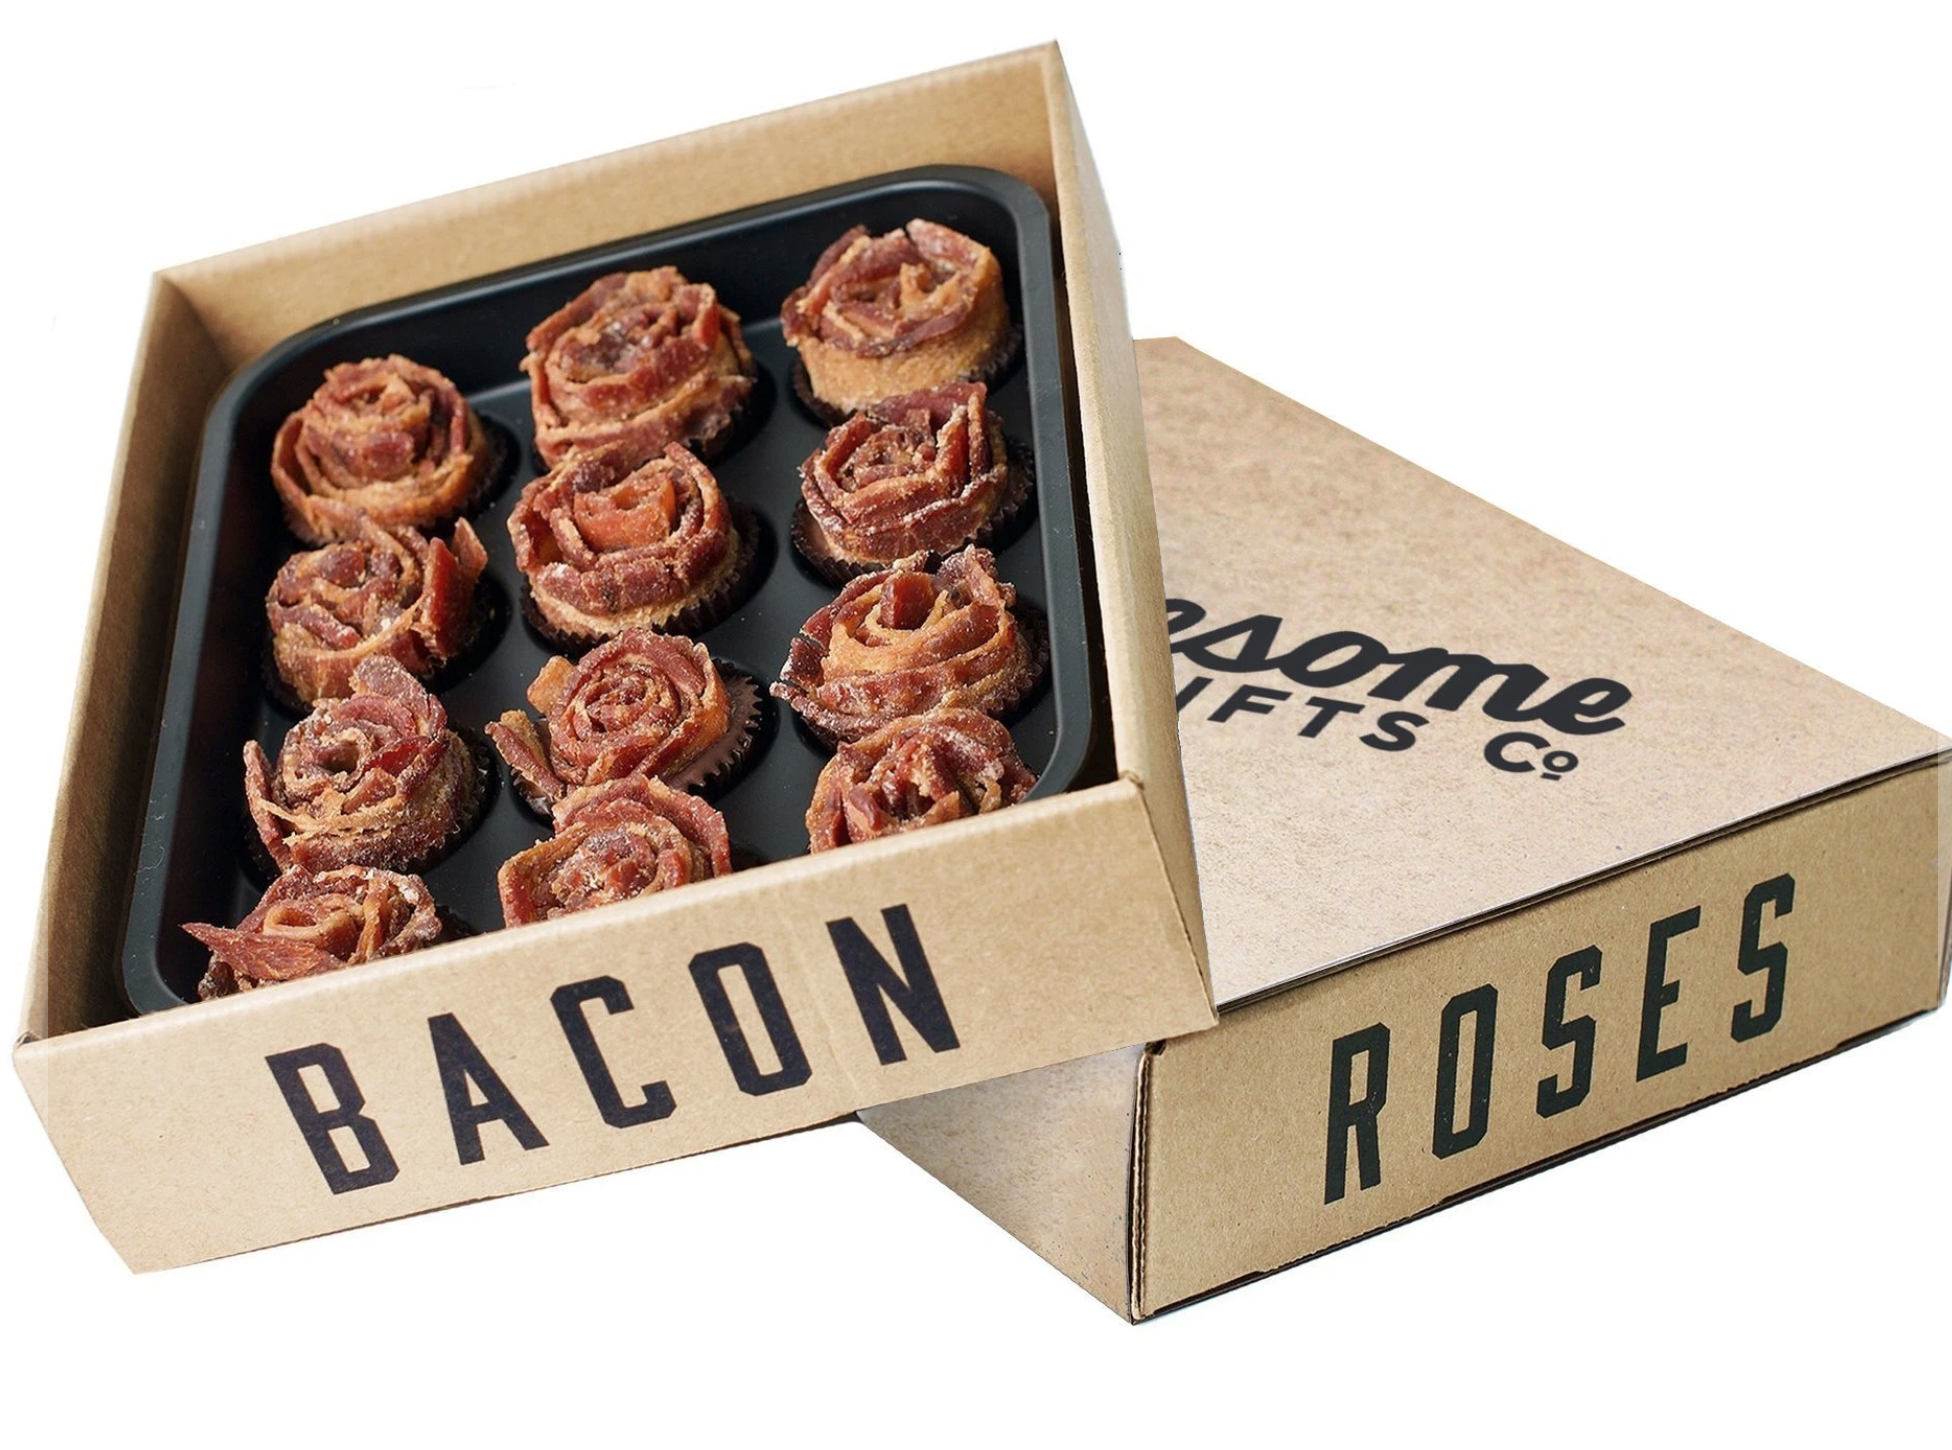 bacon roses bouquet gift idea